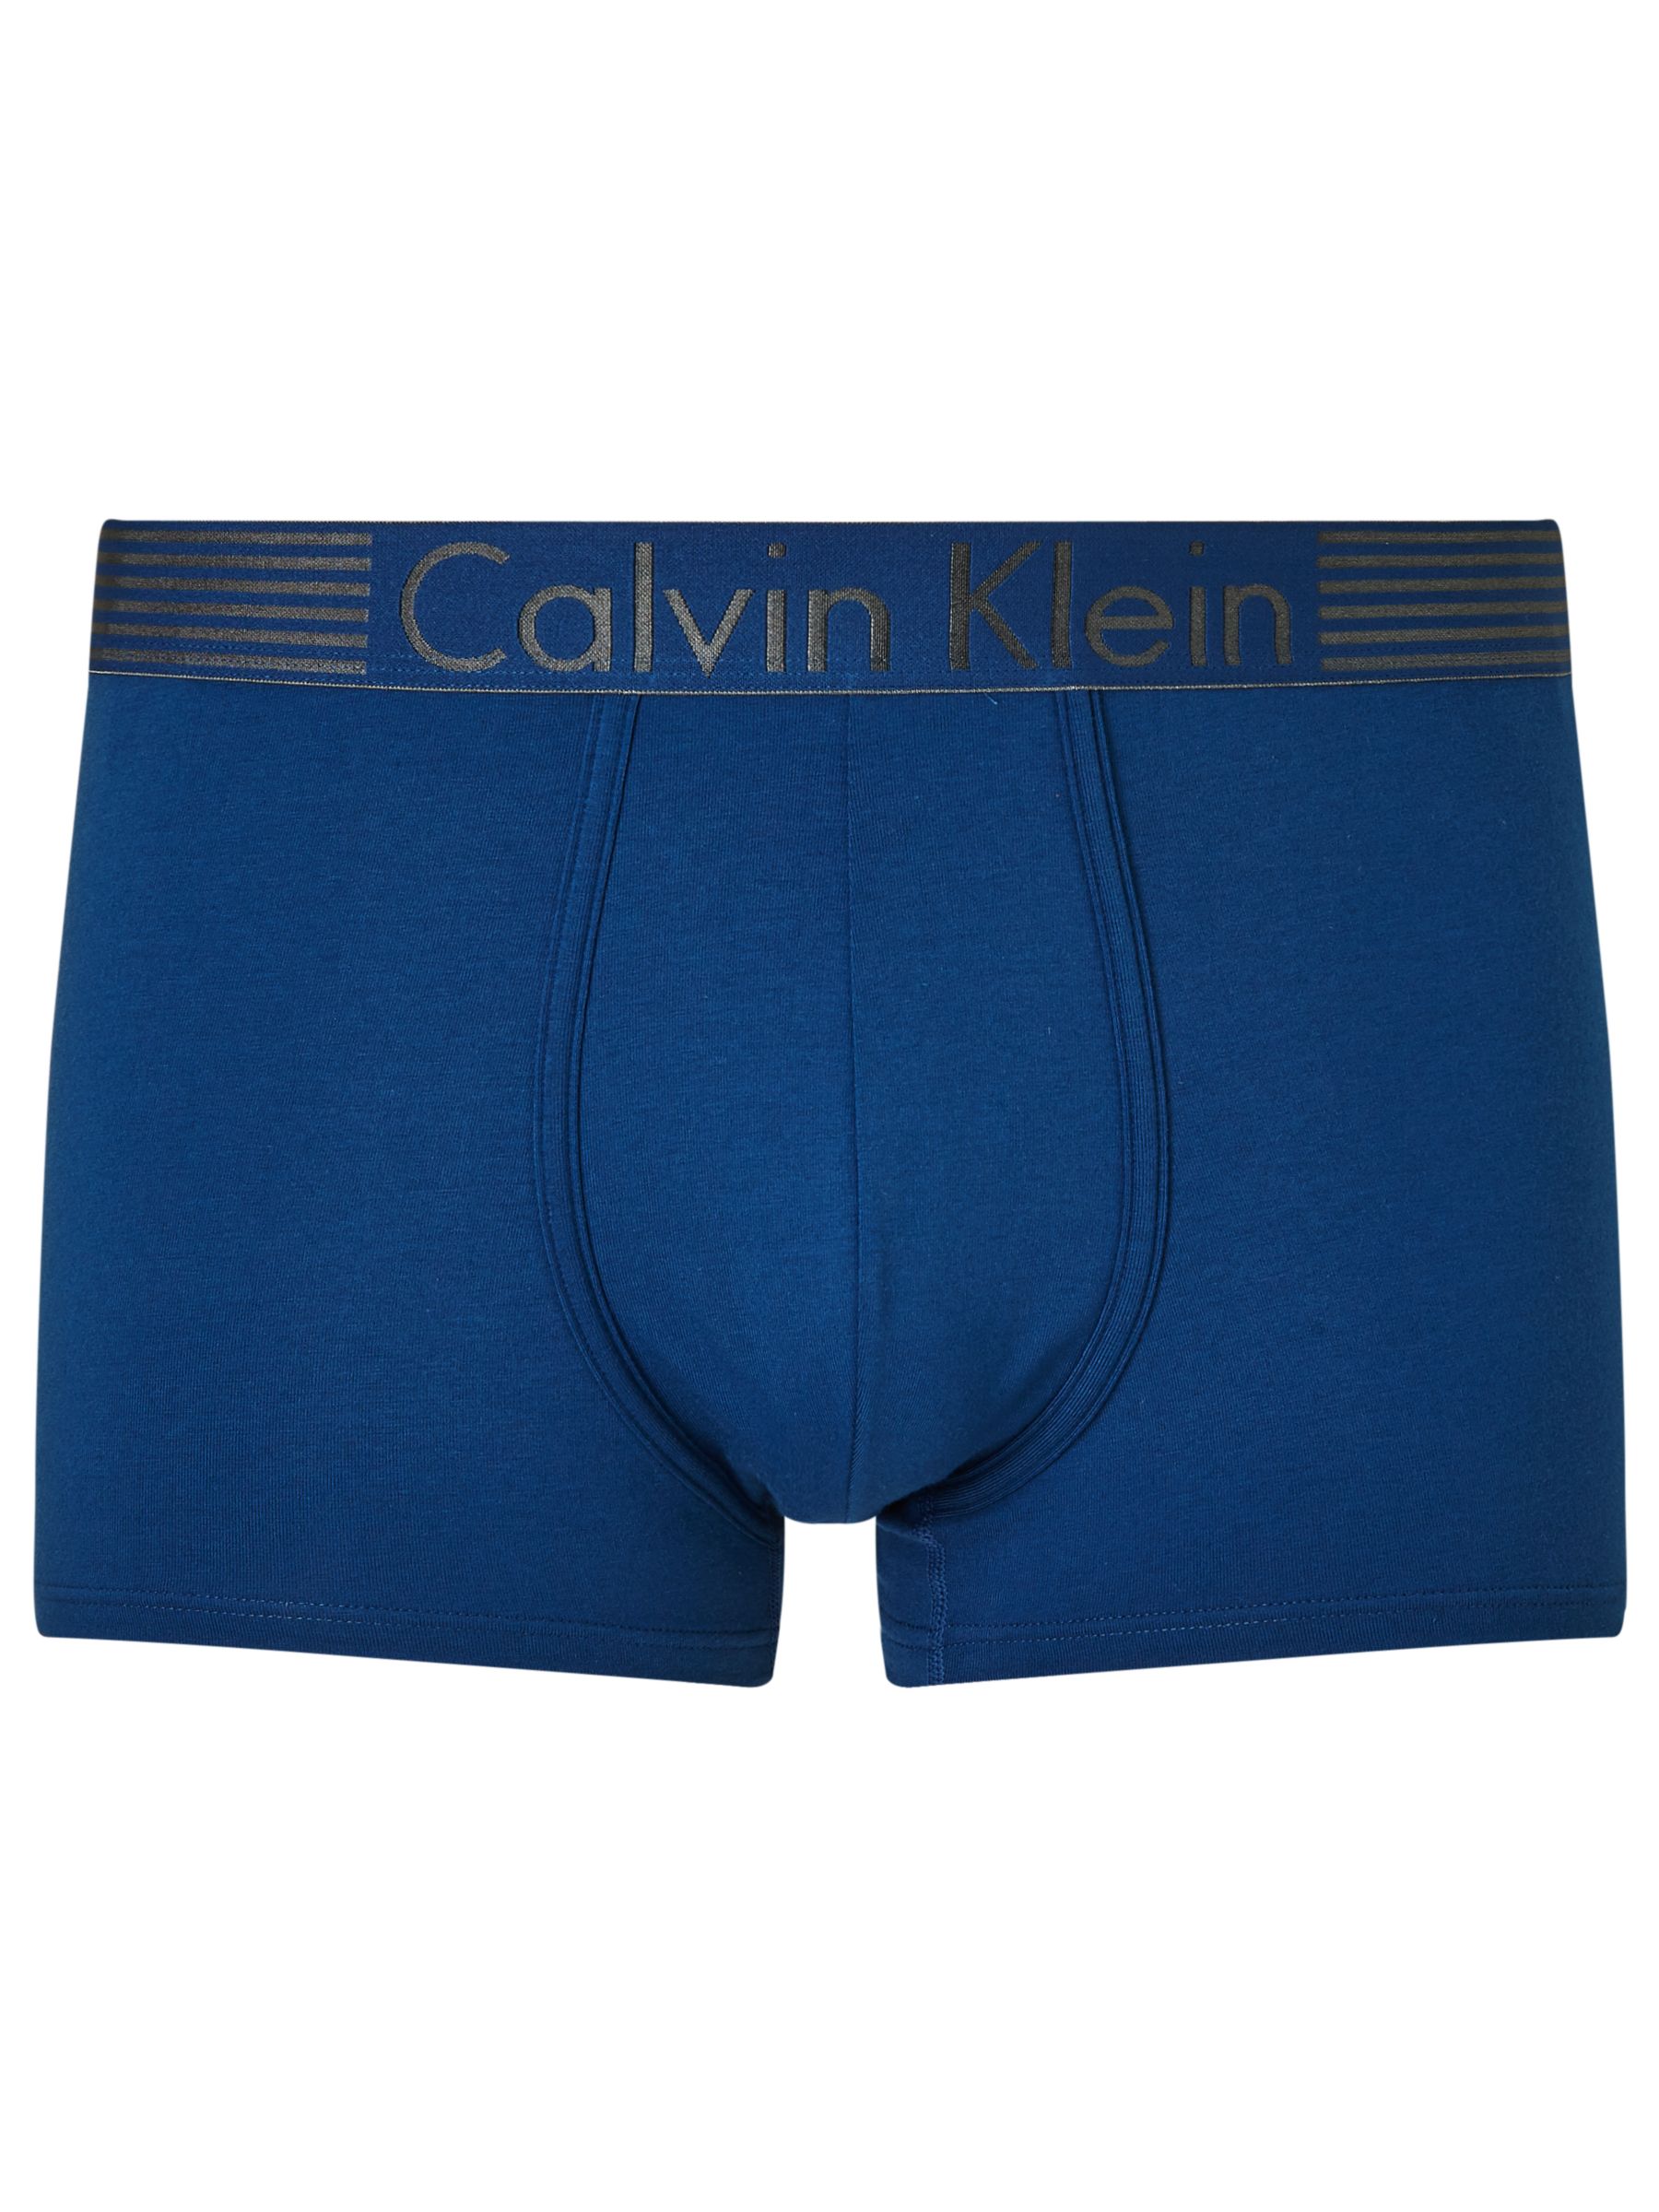 Calvin Klein Underwear Iron Strength Cotton Blend Trunks